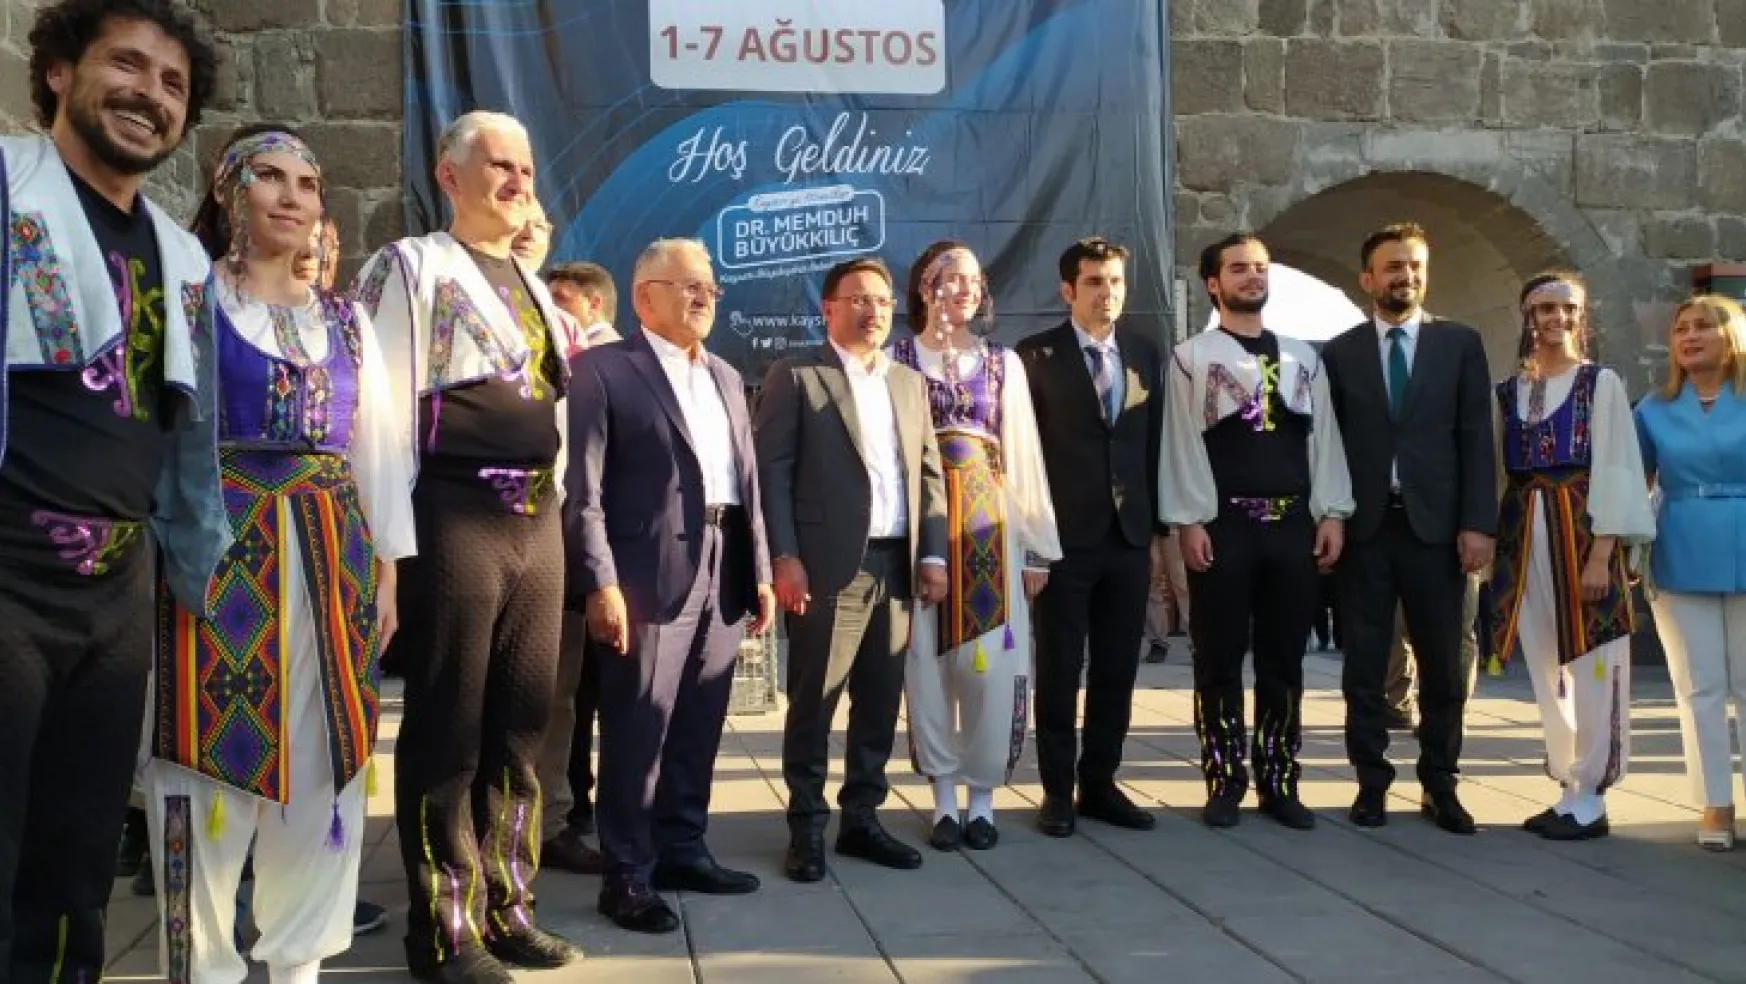 Kayseri Altın Eller Geleneksel El Sanatları Festivali açılış töreni gerçekleşti